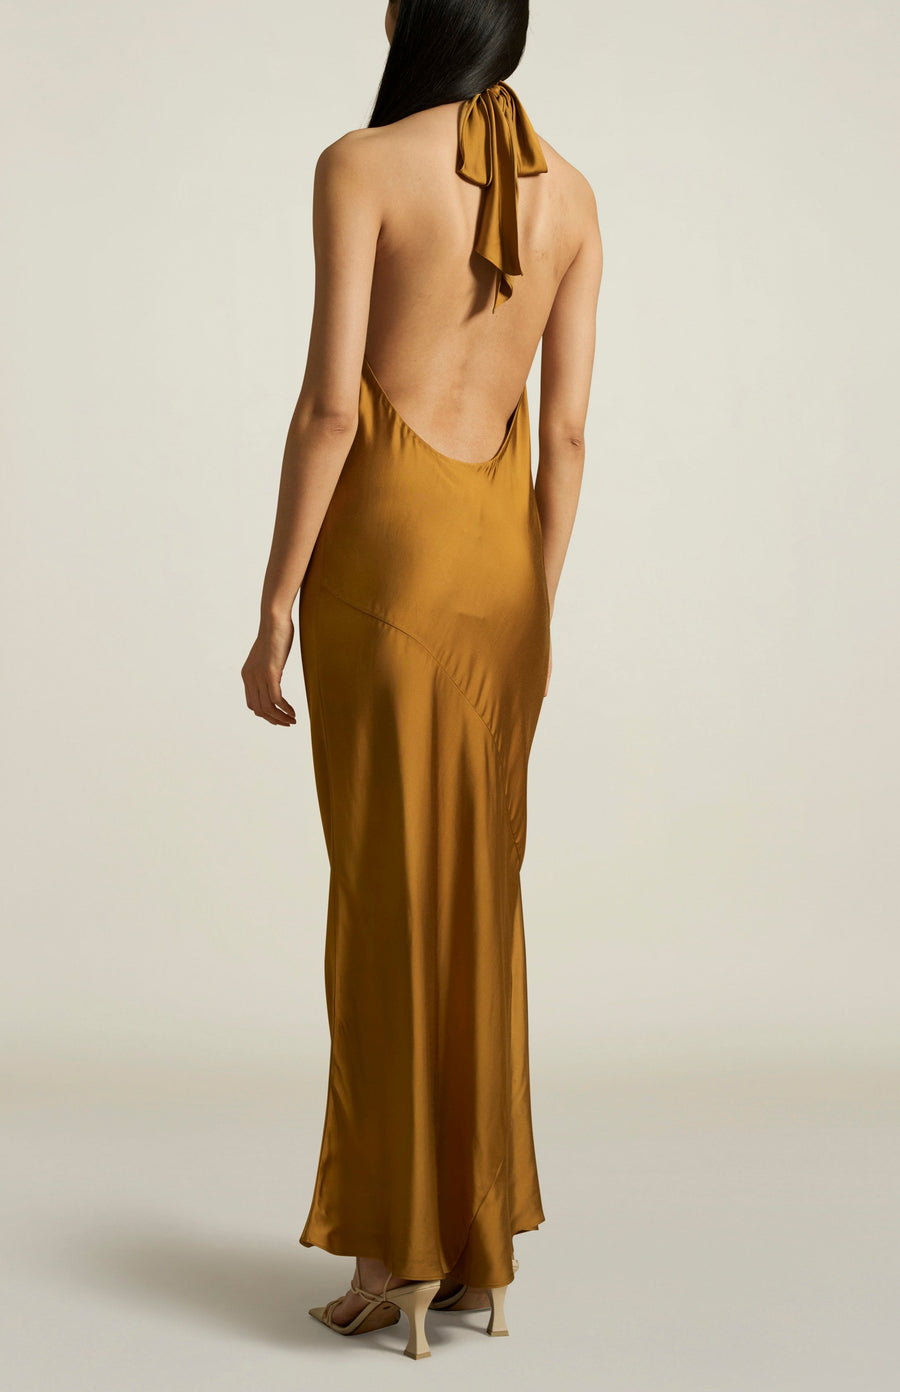 Bianca Dress in Gold Filaspun Satin